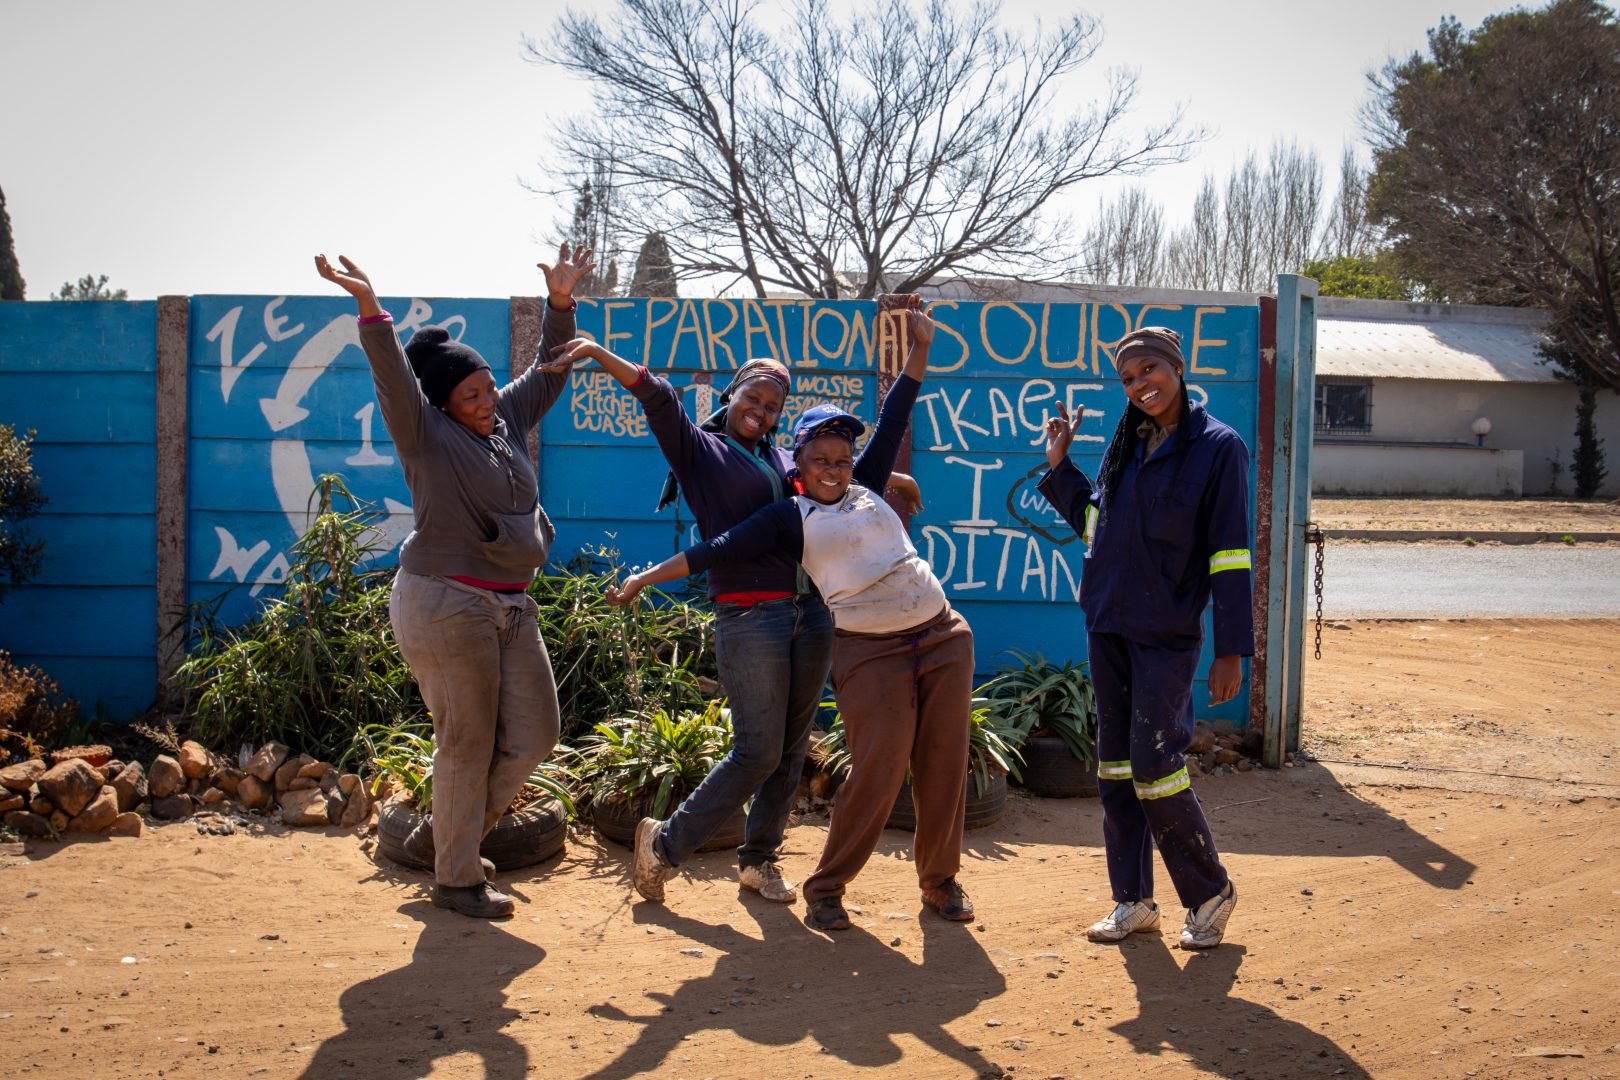 Сборщики мусора в Африке весело и беззаботно позируют с поднятыми руками перед синей стеной.